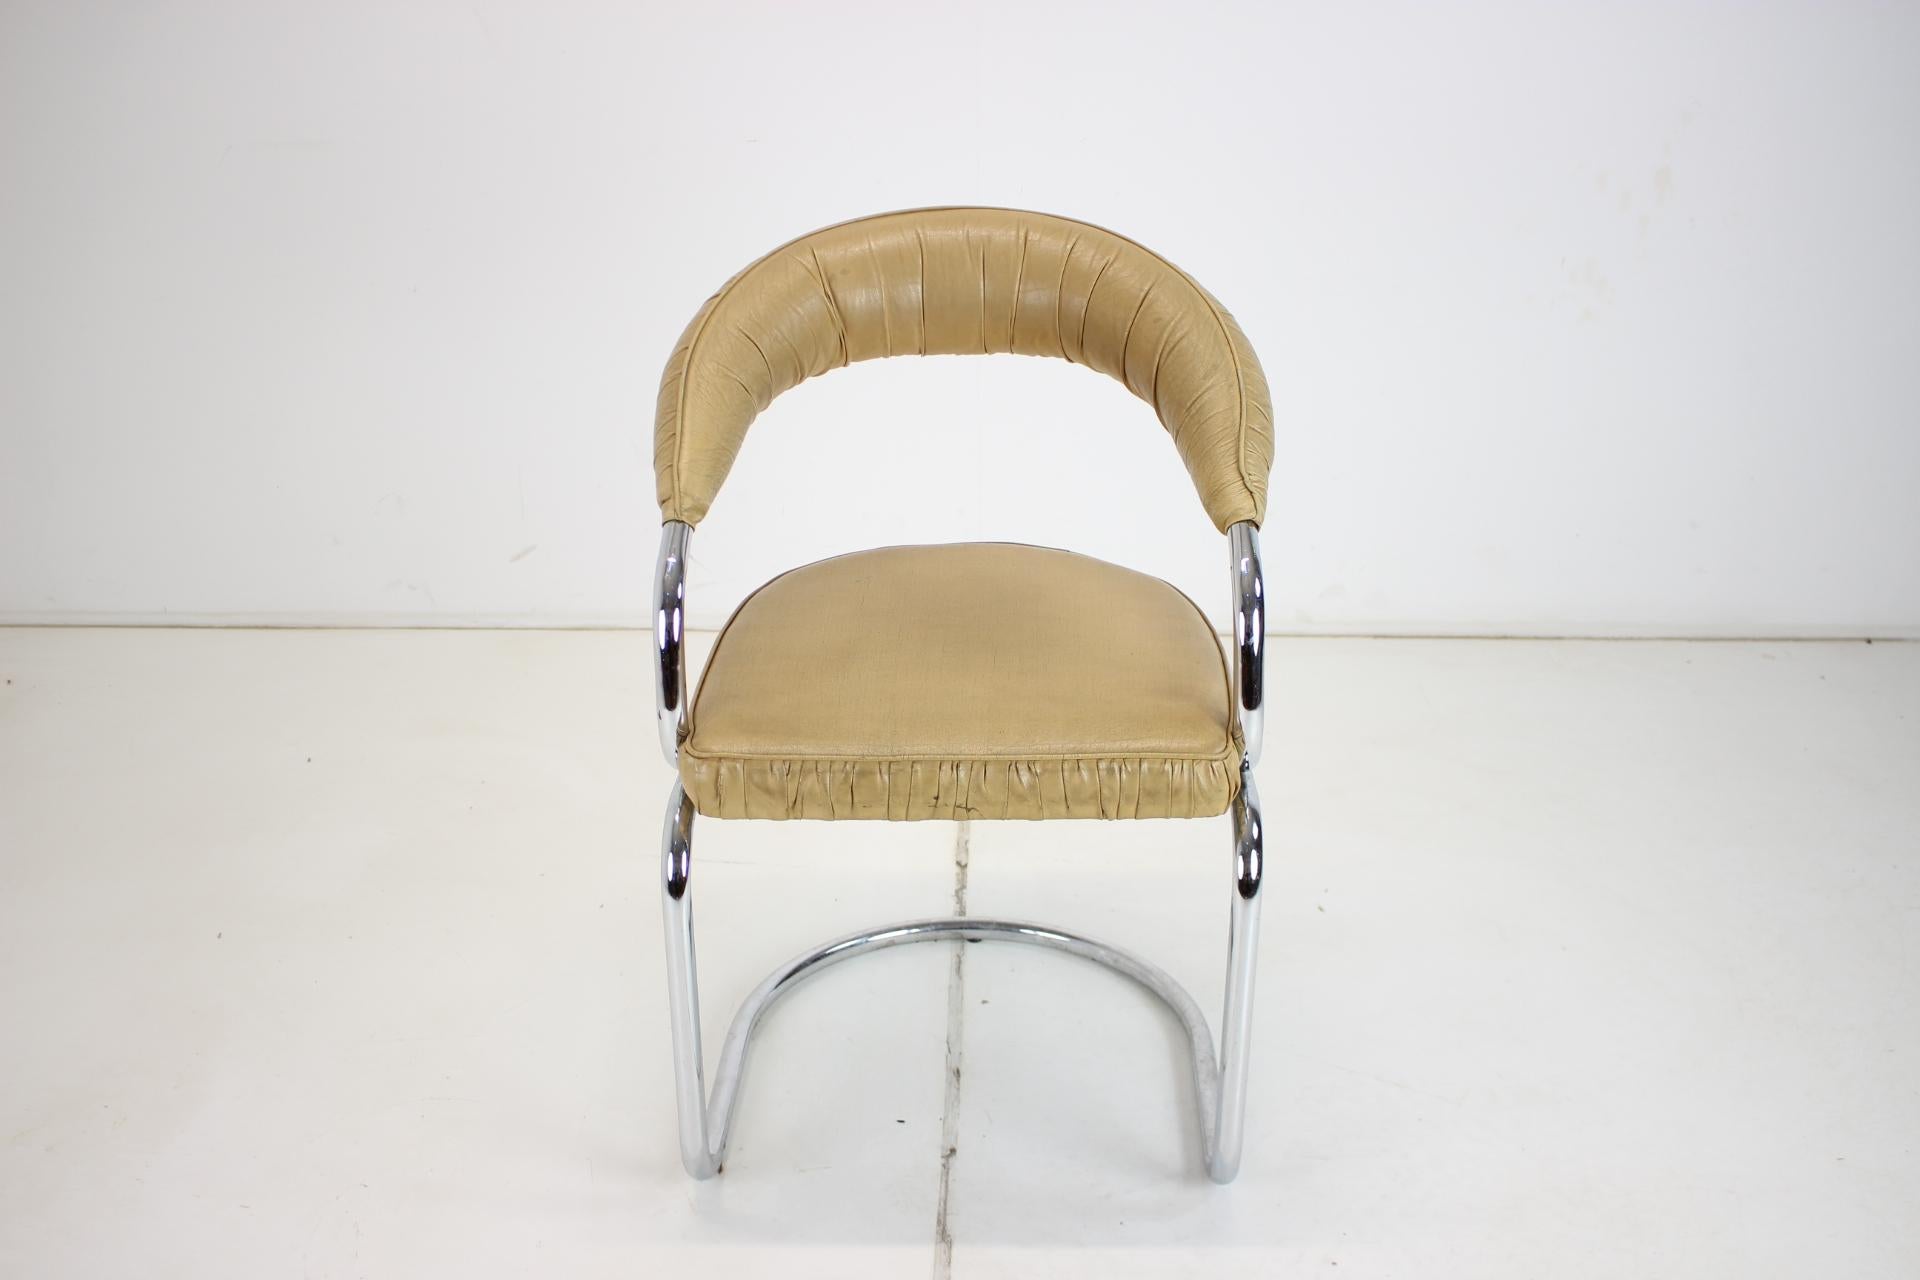 Die Stühle sind in gutem Vintage-Zustand.
Sitzhöhe 45 cm